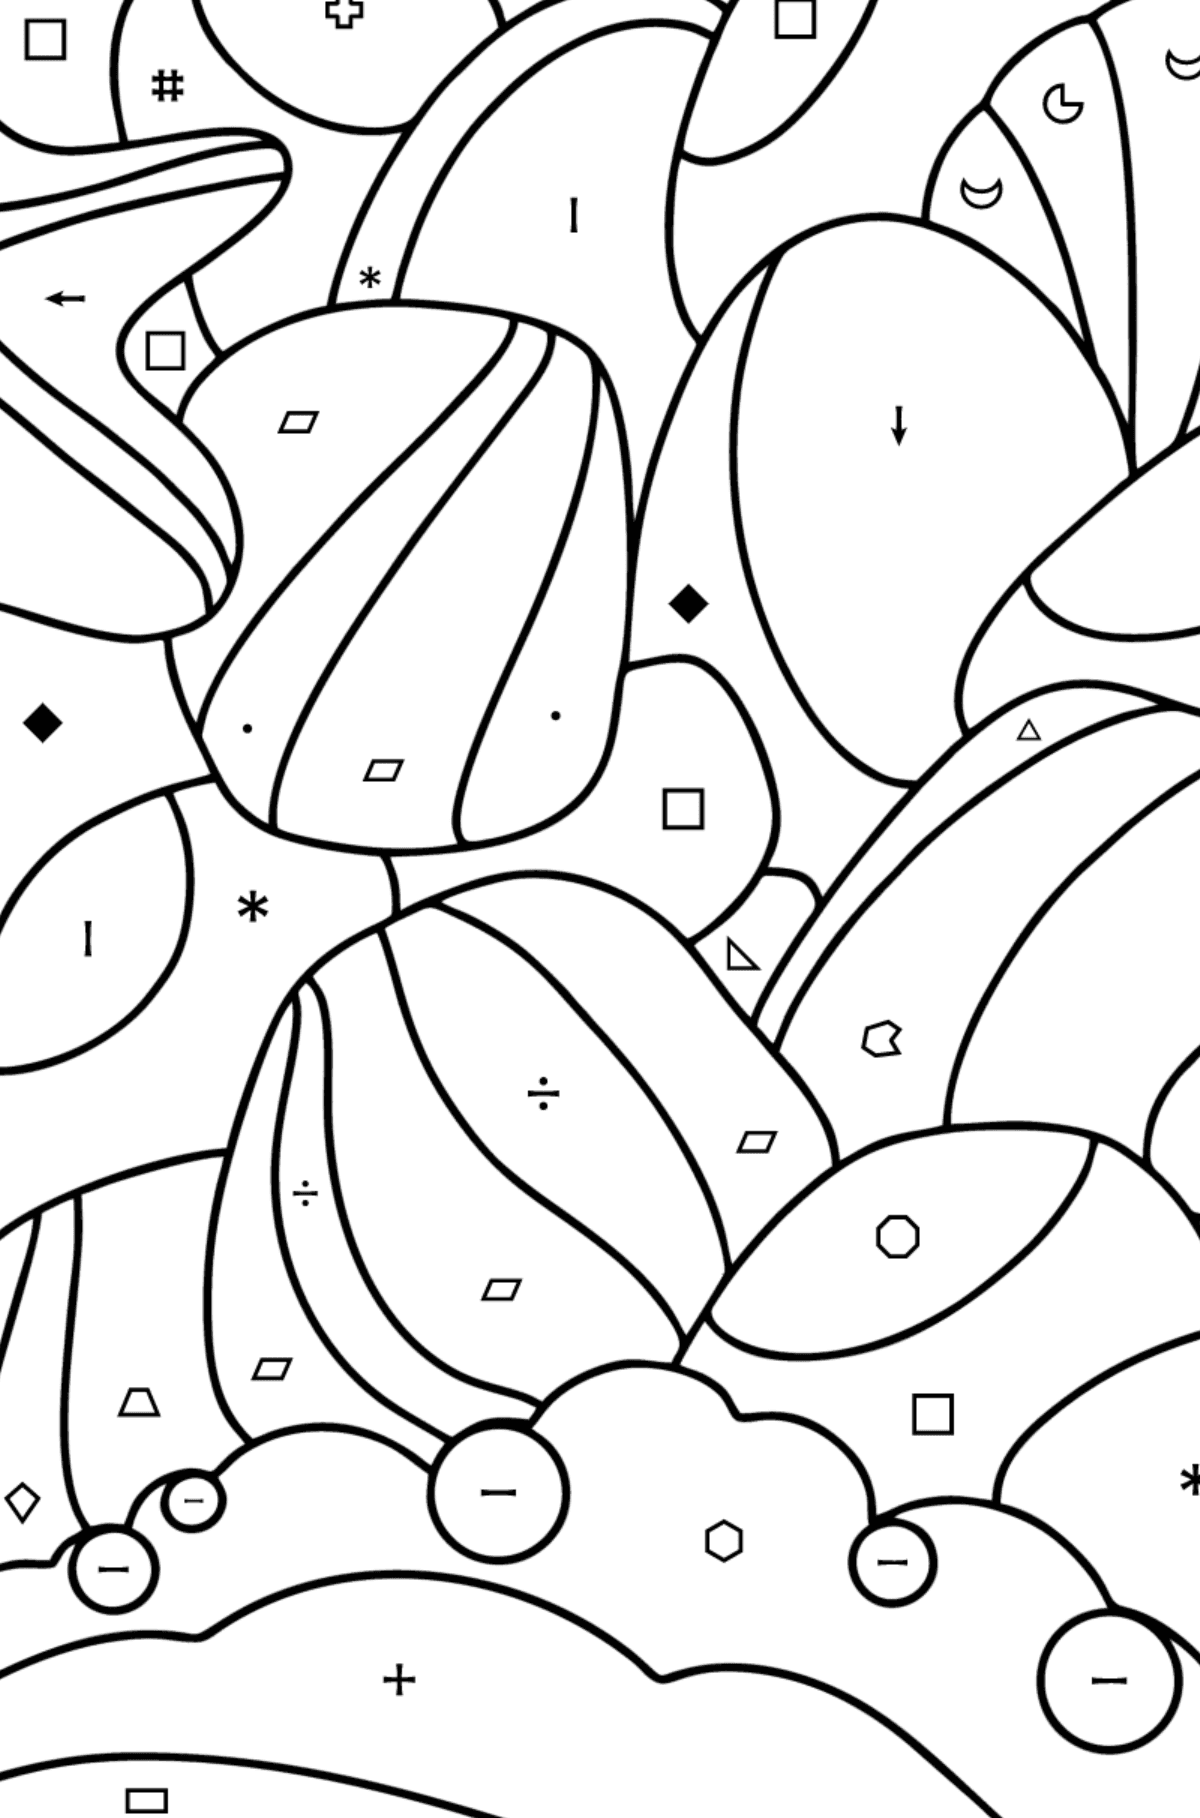 Kolorowanka Doodle dla dzieci - Morskie kamyki - Kolorowanie według symboli i figur geometrycznych dla dzieci